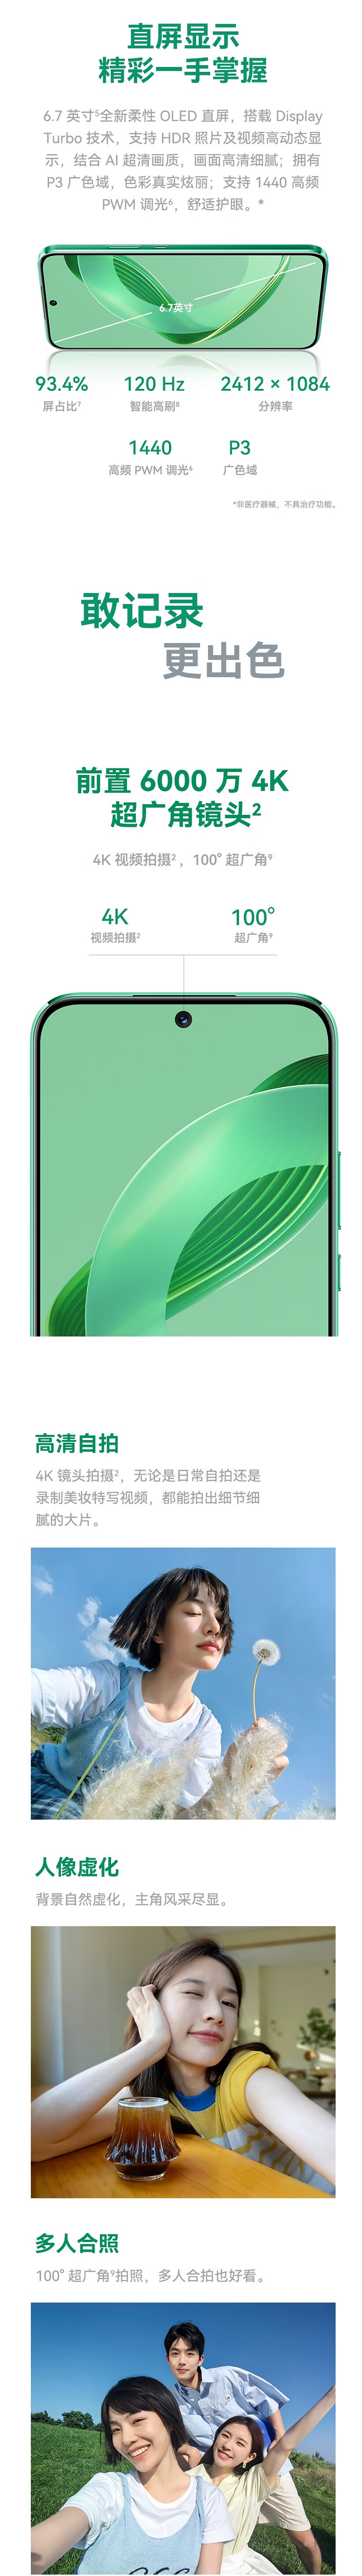 中邮 Hi nova 11 手机开售：骁龙 778G 5G 处理器，2799 元 - 2